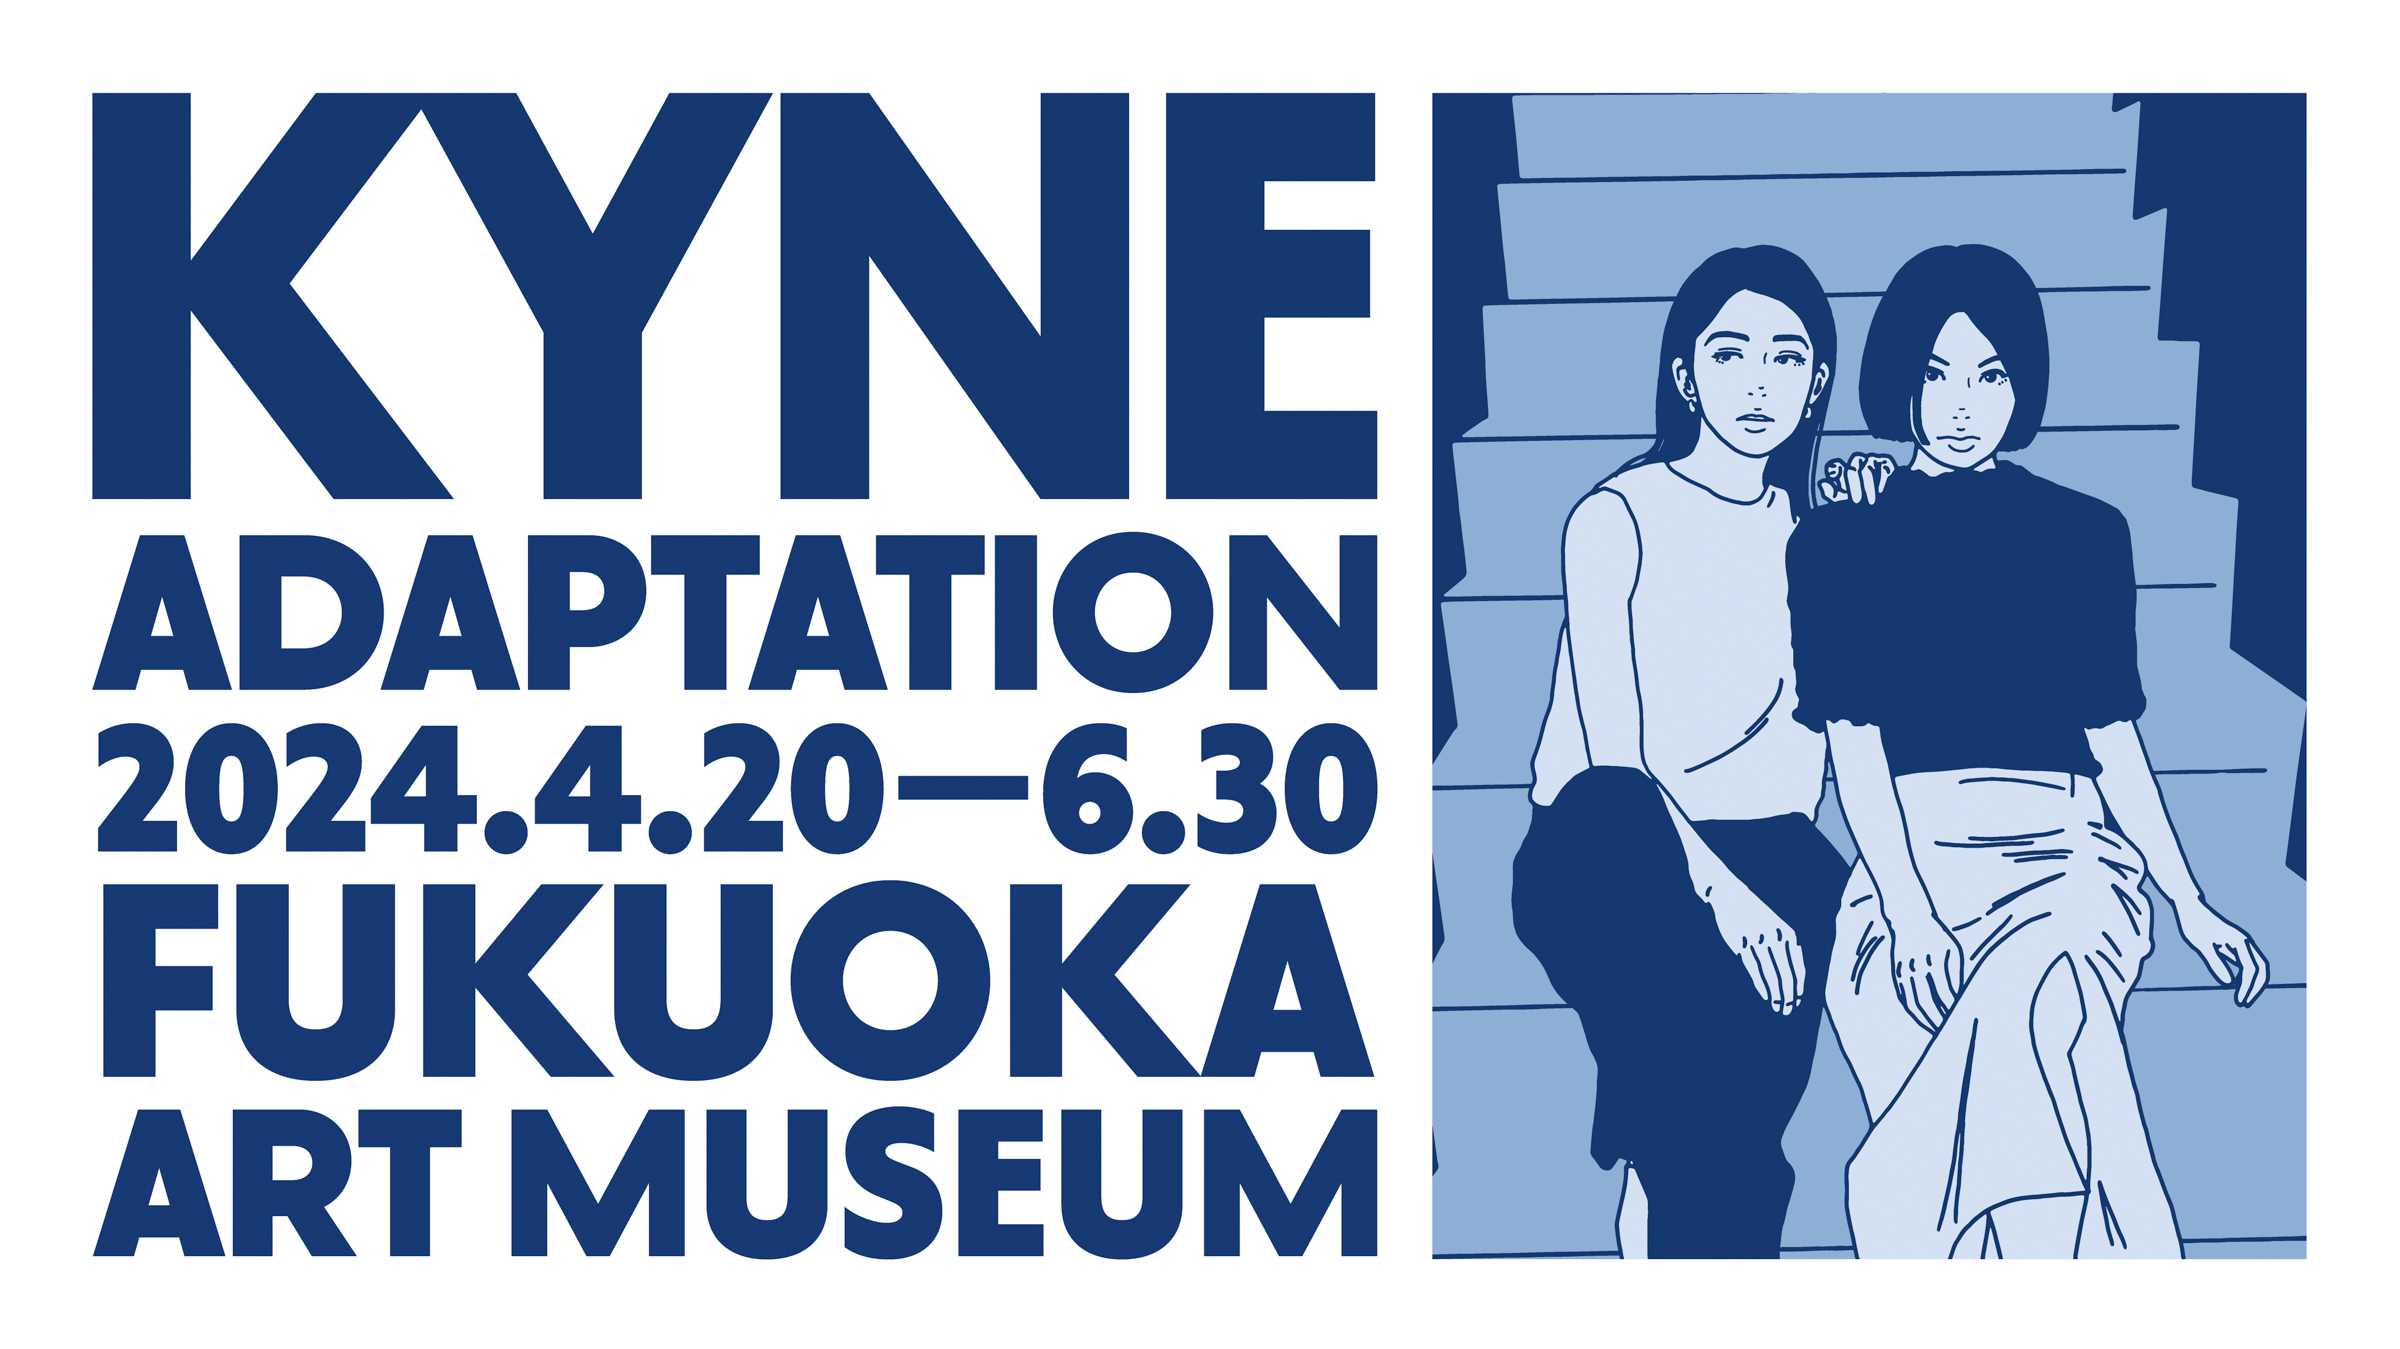 アーティストの「KYNE」が国内初の大規模個展を福岡で開催、「博多通りもん」とのコラボグッズを販売